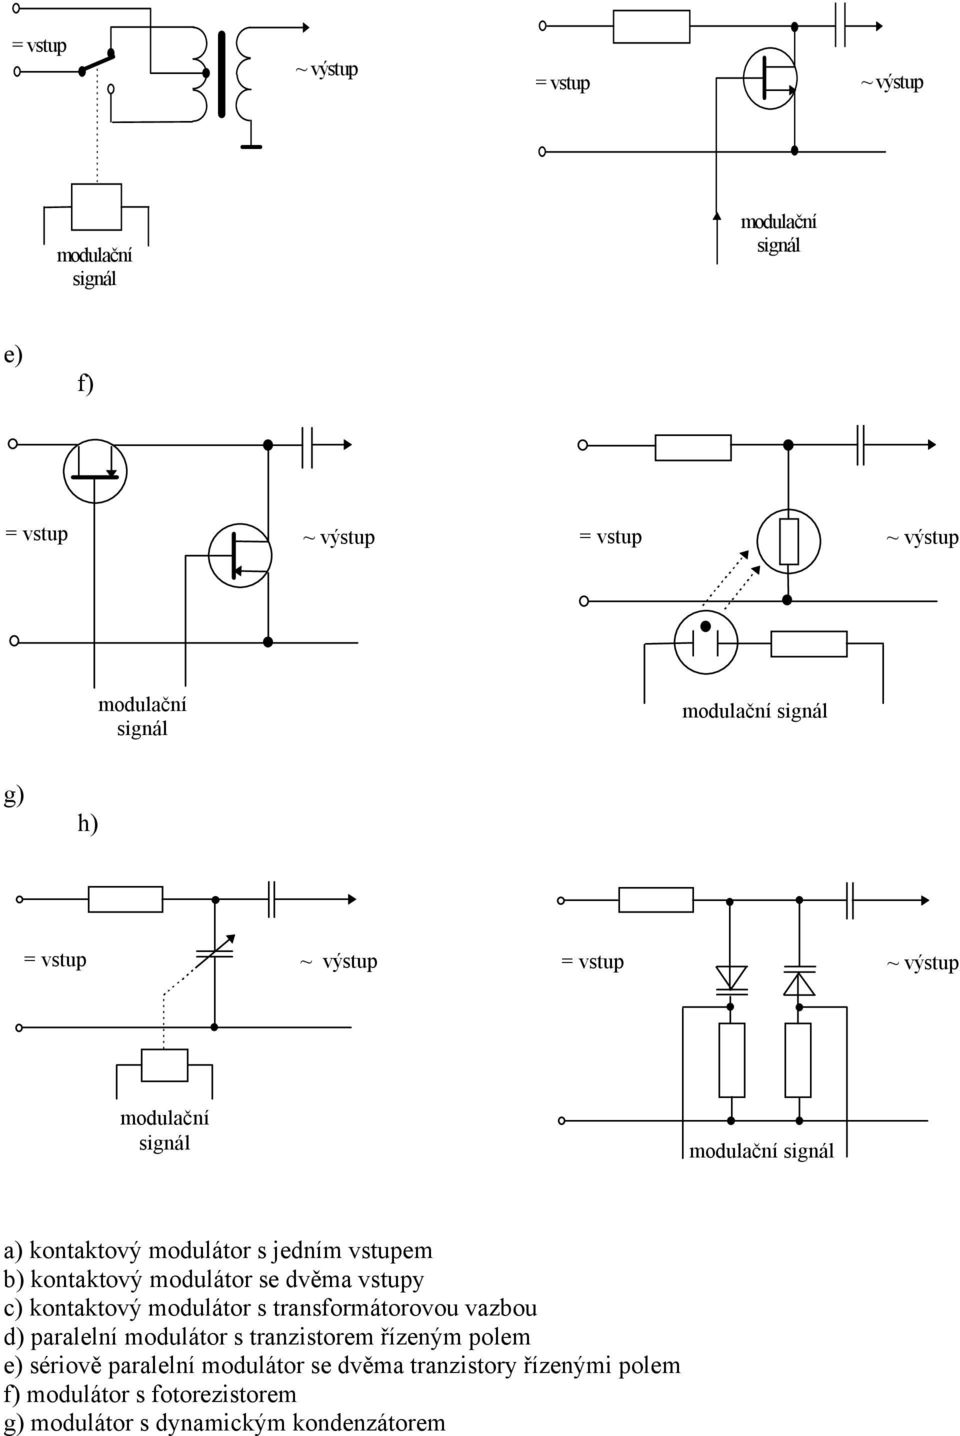 b) kontaktový modulátor se dvěma vstupy c) kontaktový modulátor s transformátorovou vazbou d) paralelní modulátor s tranzistorem